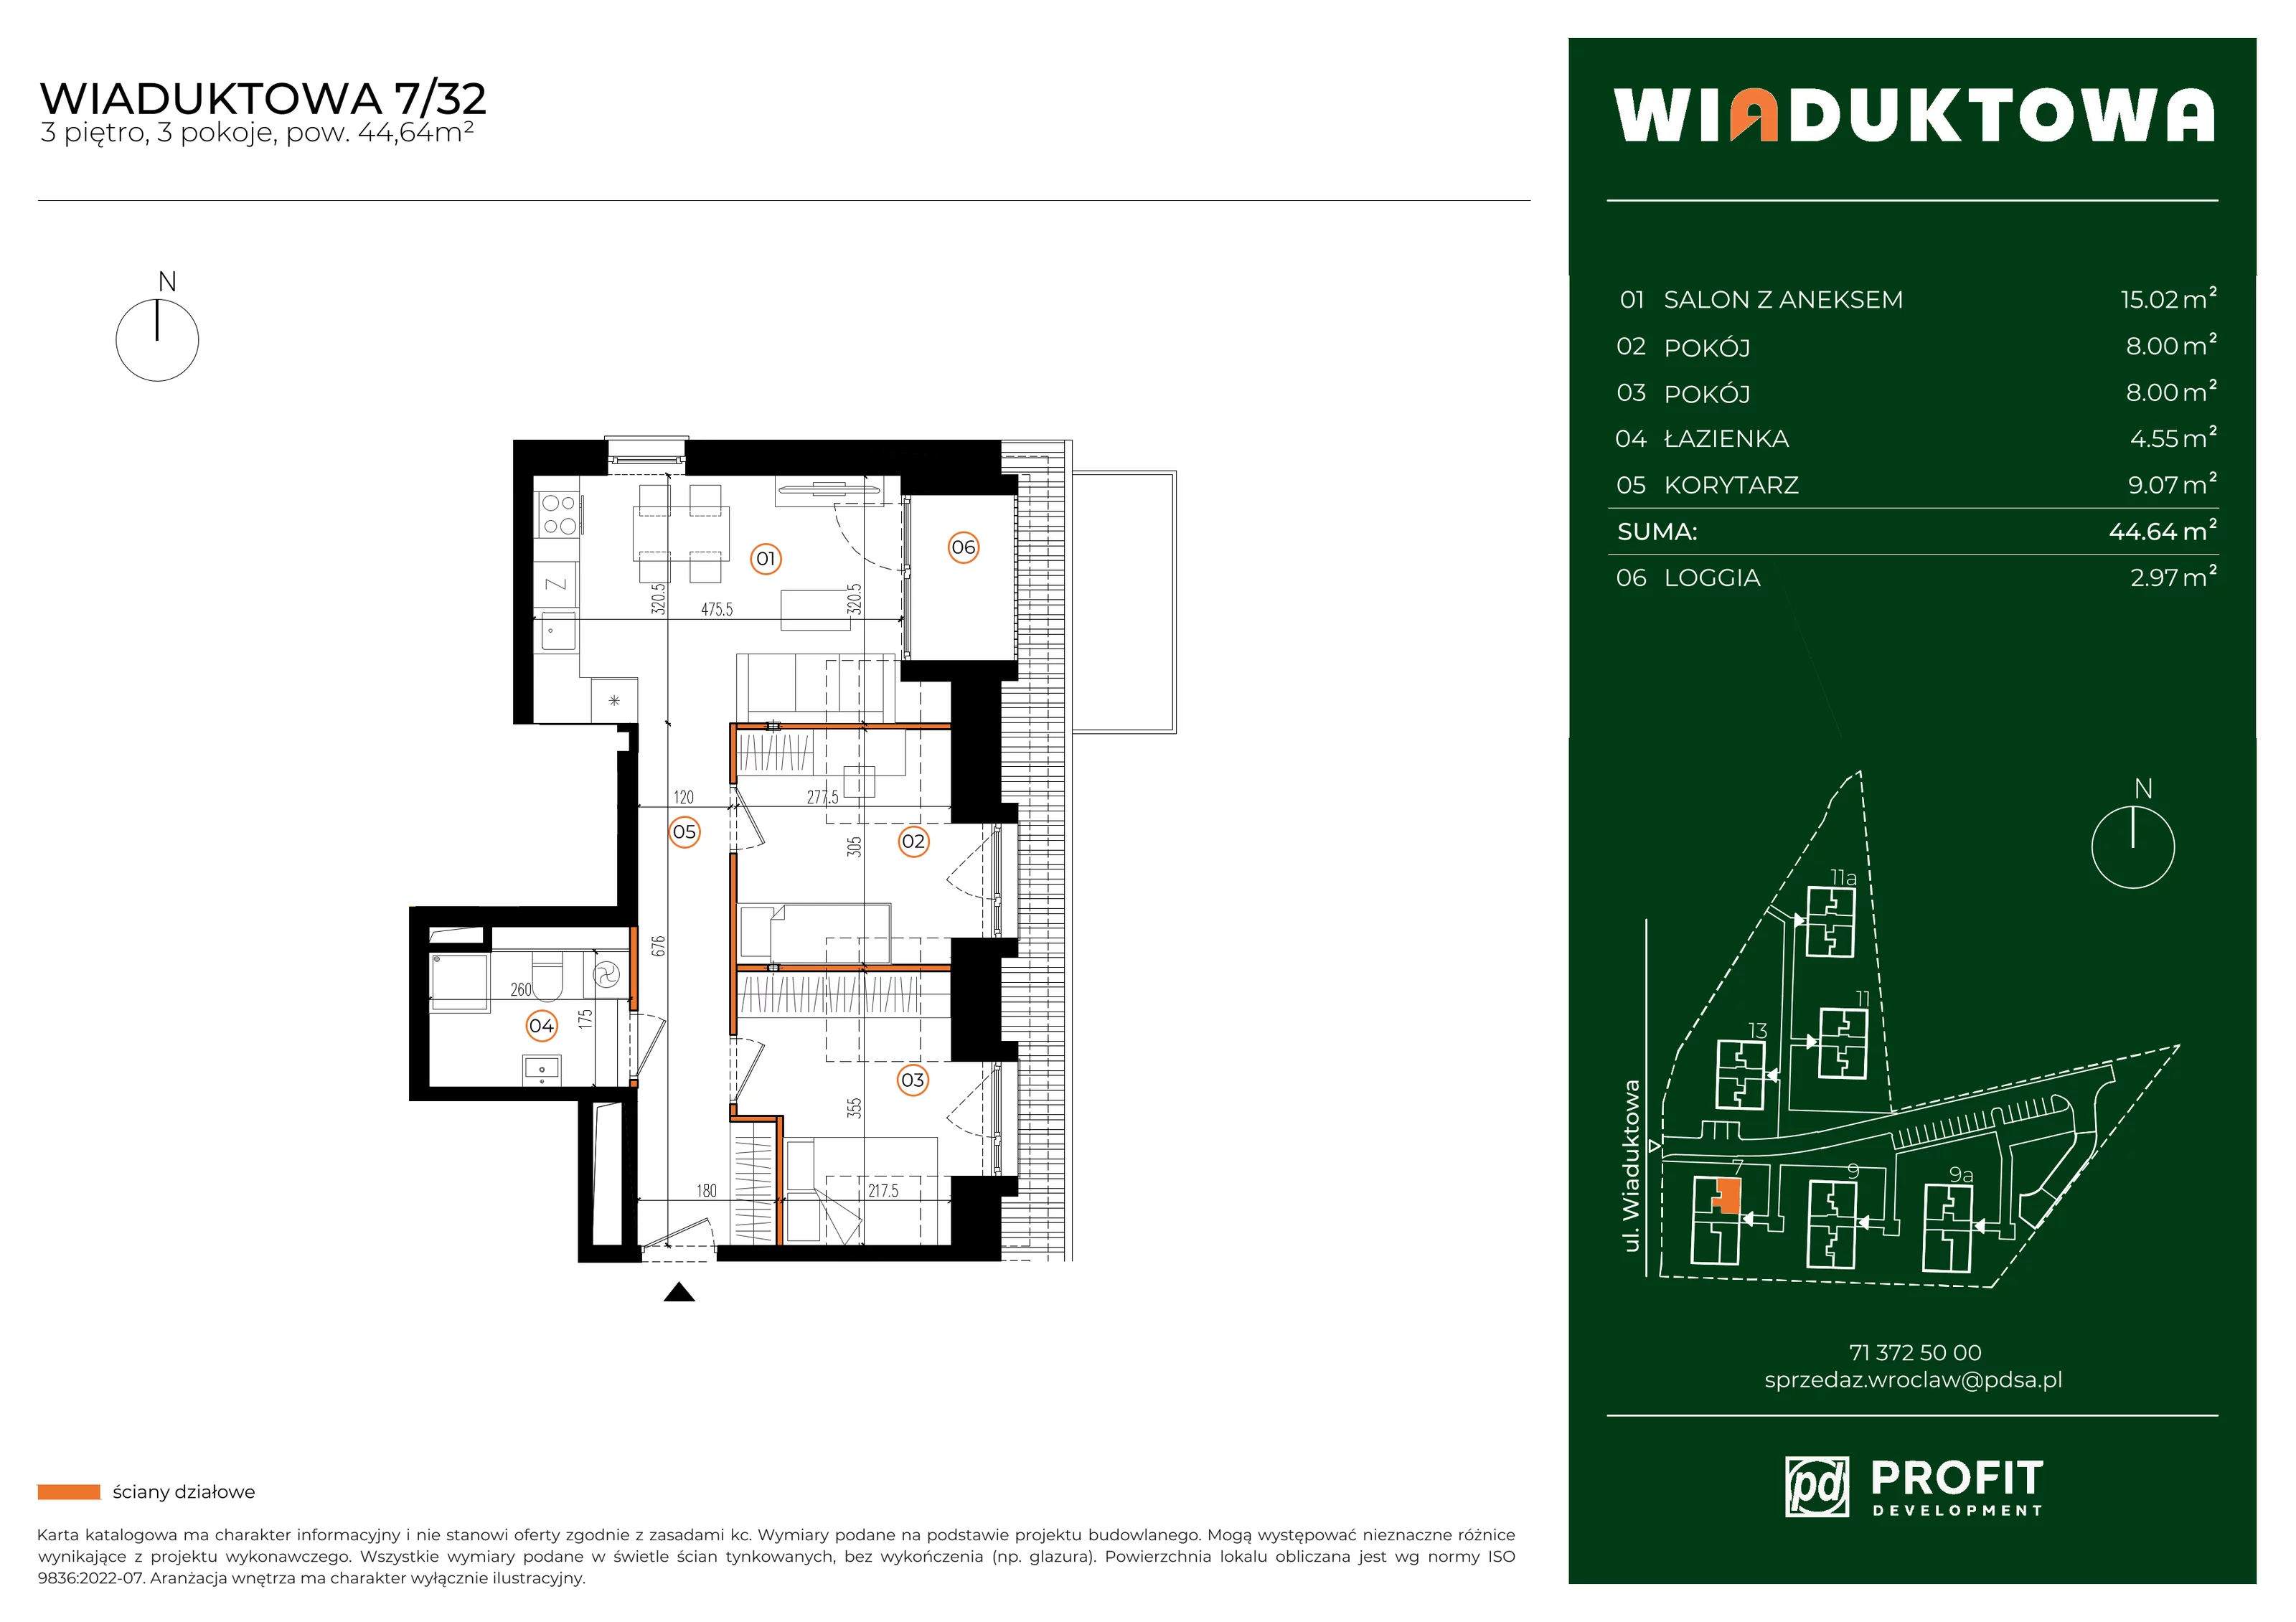 Mieszkanie 44,64 m², piętro 3, oferta nr WI/7/32, Wiaduktowa, Wrocław, Krzyki-Partynice, Krzyki, ul. Wiaduktowa